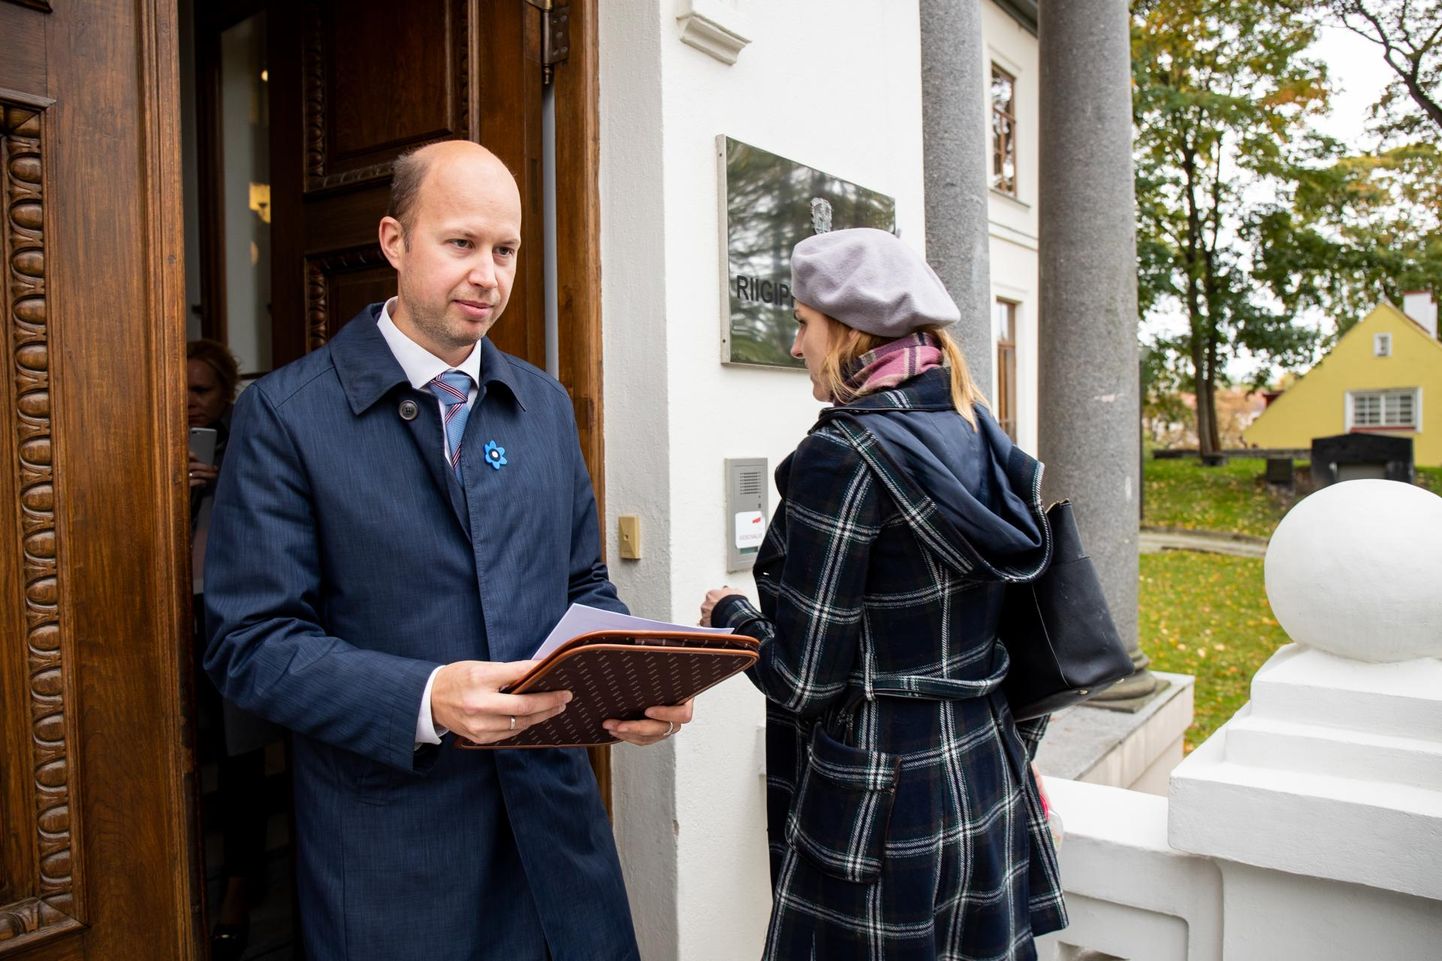 Eesti 200 esindaja Igor Taro viis riigiprokuratuuri kuriteokahtlustuse katuseraha jagamises. Kuritegu ei leitud.